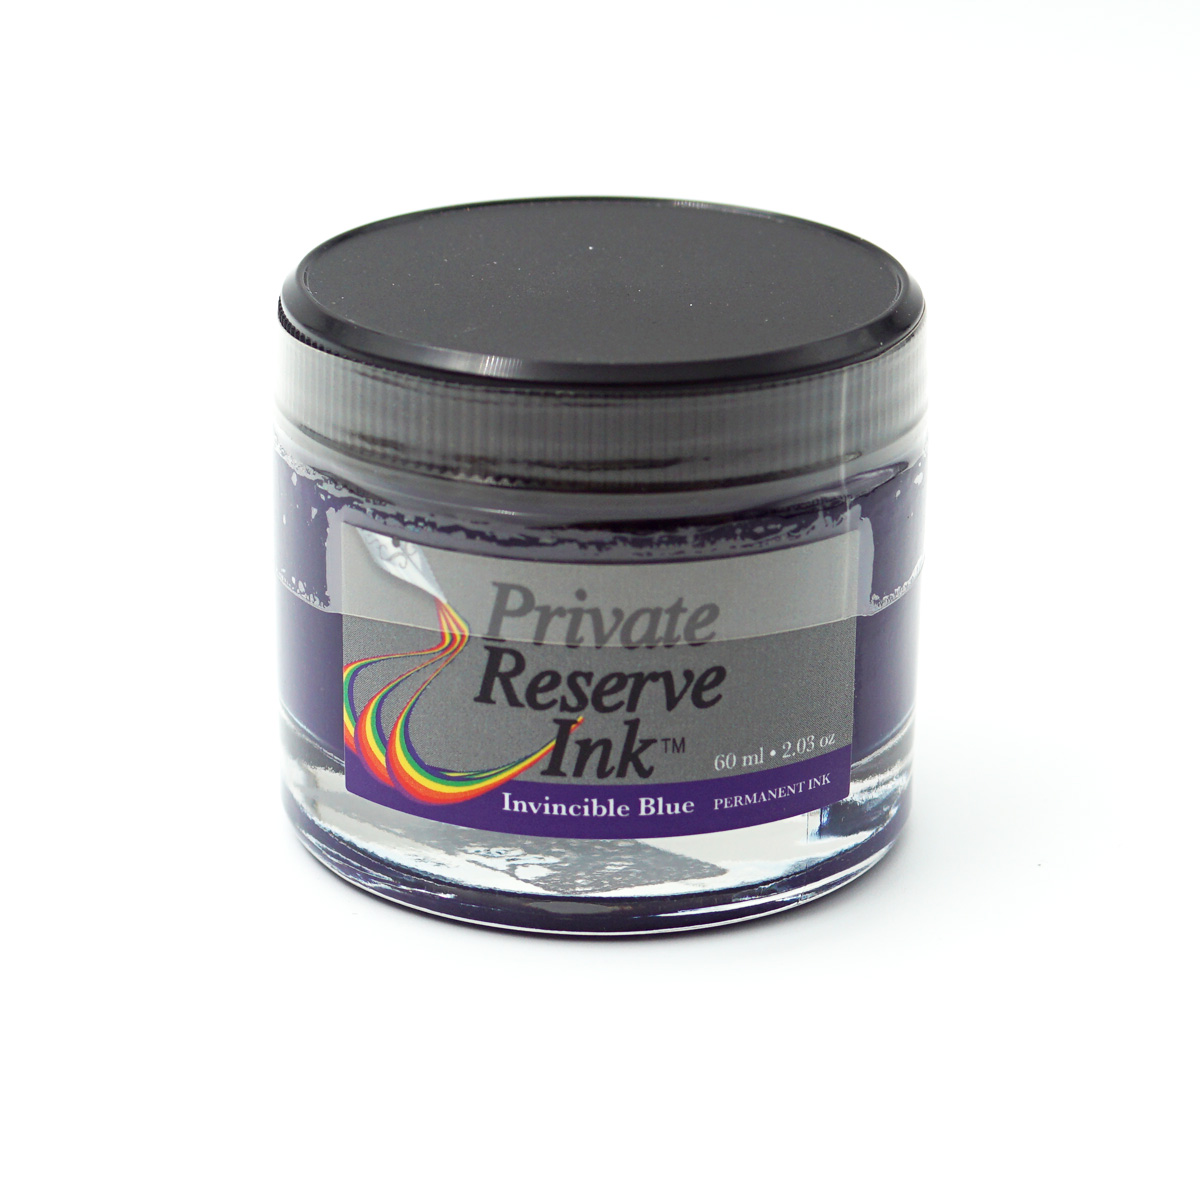 Private Reserve Ink PR17038 60ml Permanent Ink Invincible Blue Color Ink Bottle SKU70804